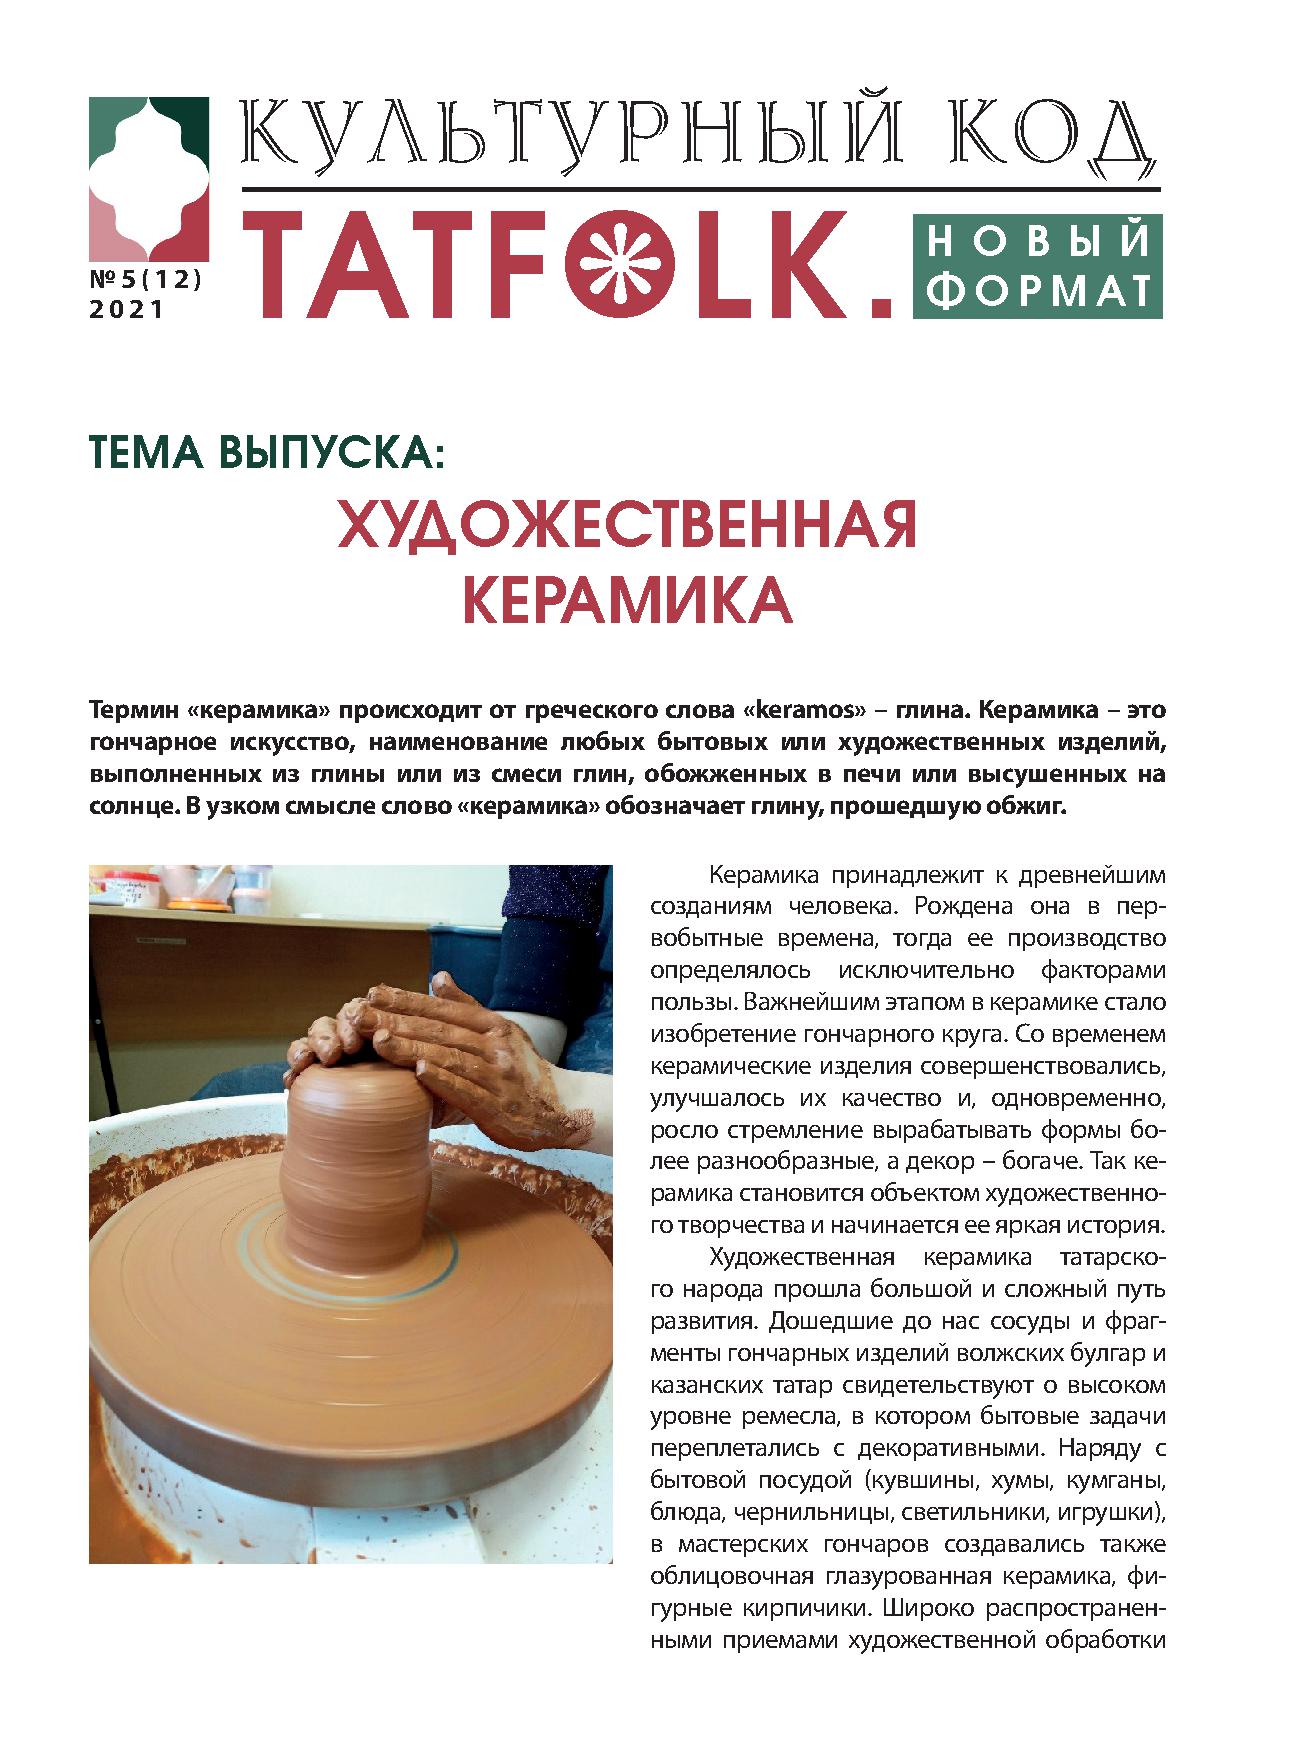 Татарстан: что нужно знать перед поездкой